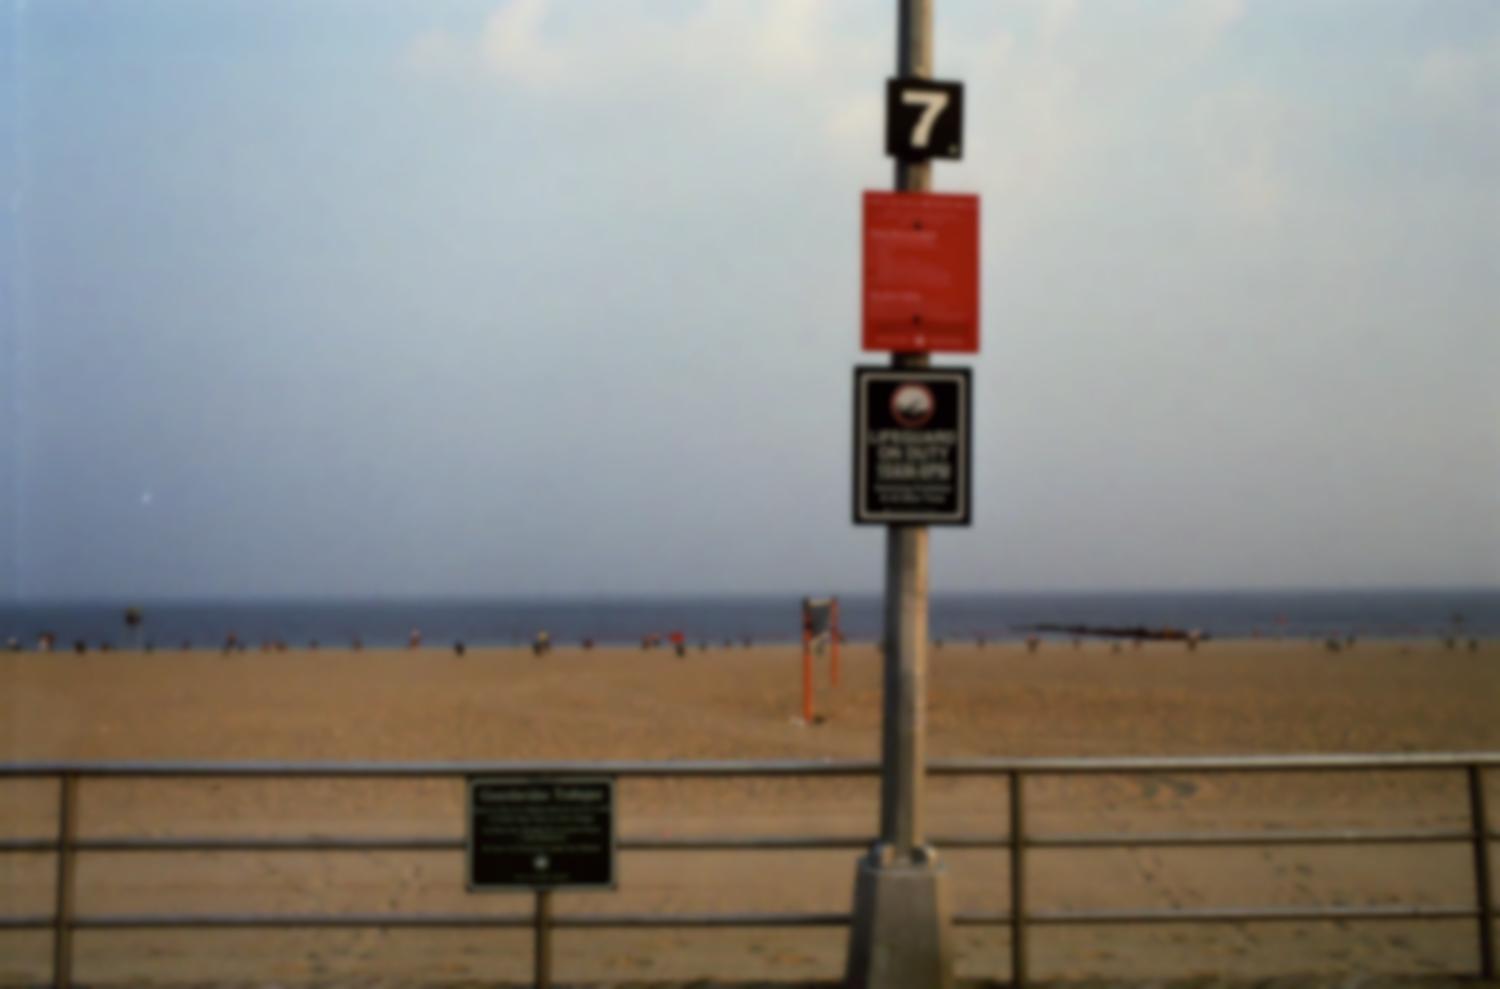 Brighton Beach : devant la plage et la mer, accrochés à une barrière et un poteau, un règlement, et, en anglais et en espagnol, les horaires de présence des sauveteurs - interdiction de se baigner en-dehors de ces heures. New York, juin 2003.